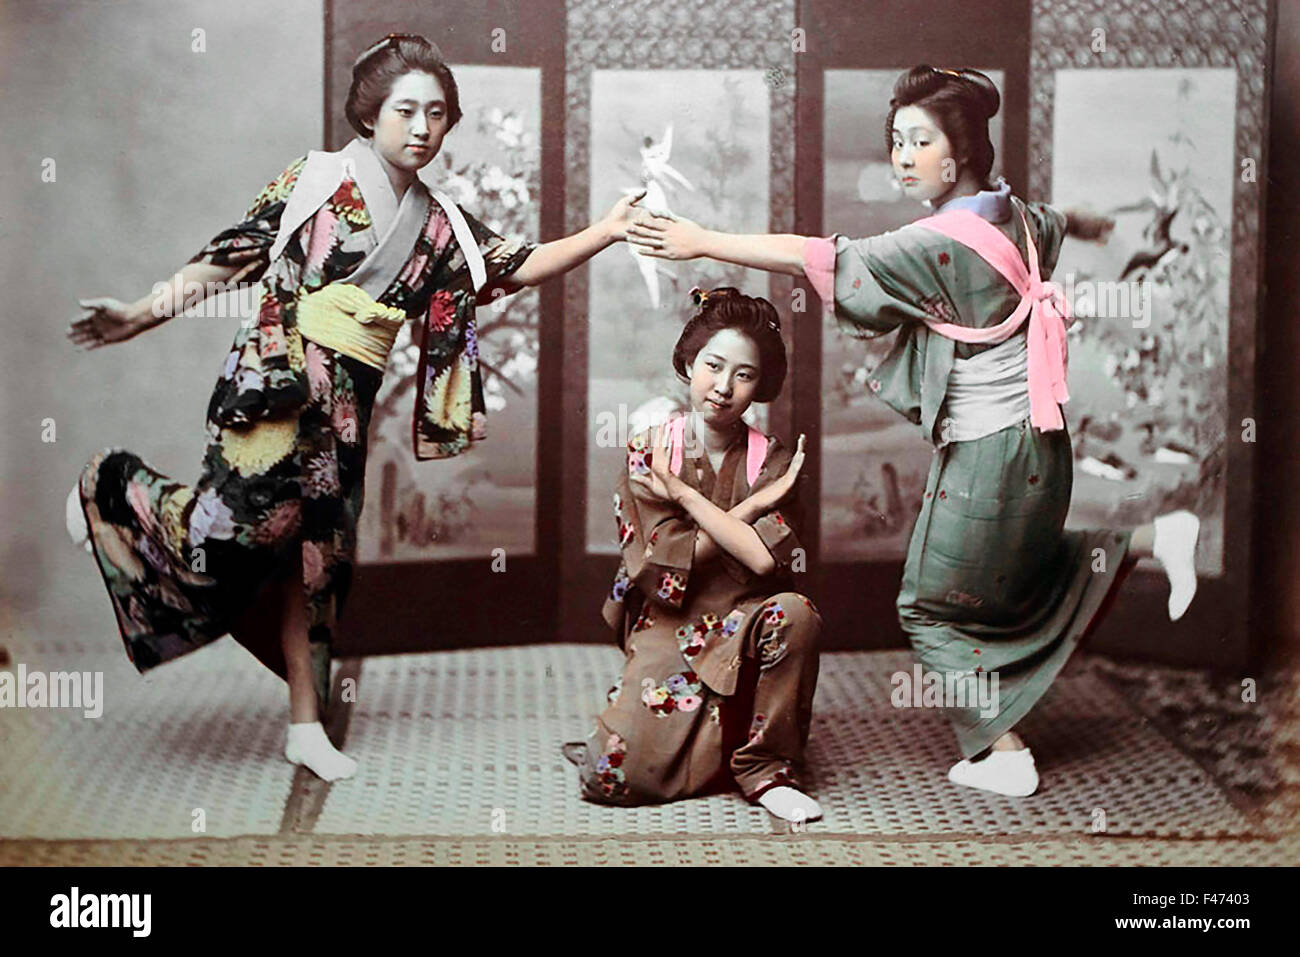 La danse japonaise, Japon Banque D'Images